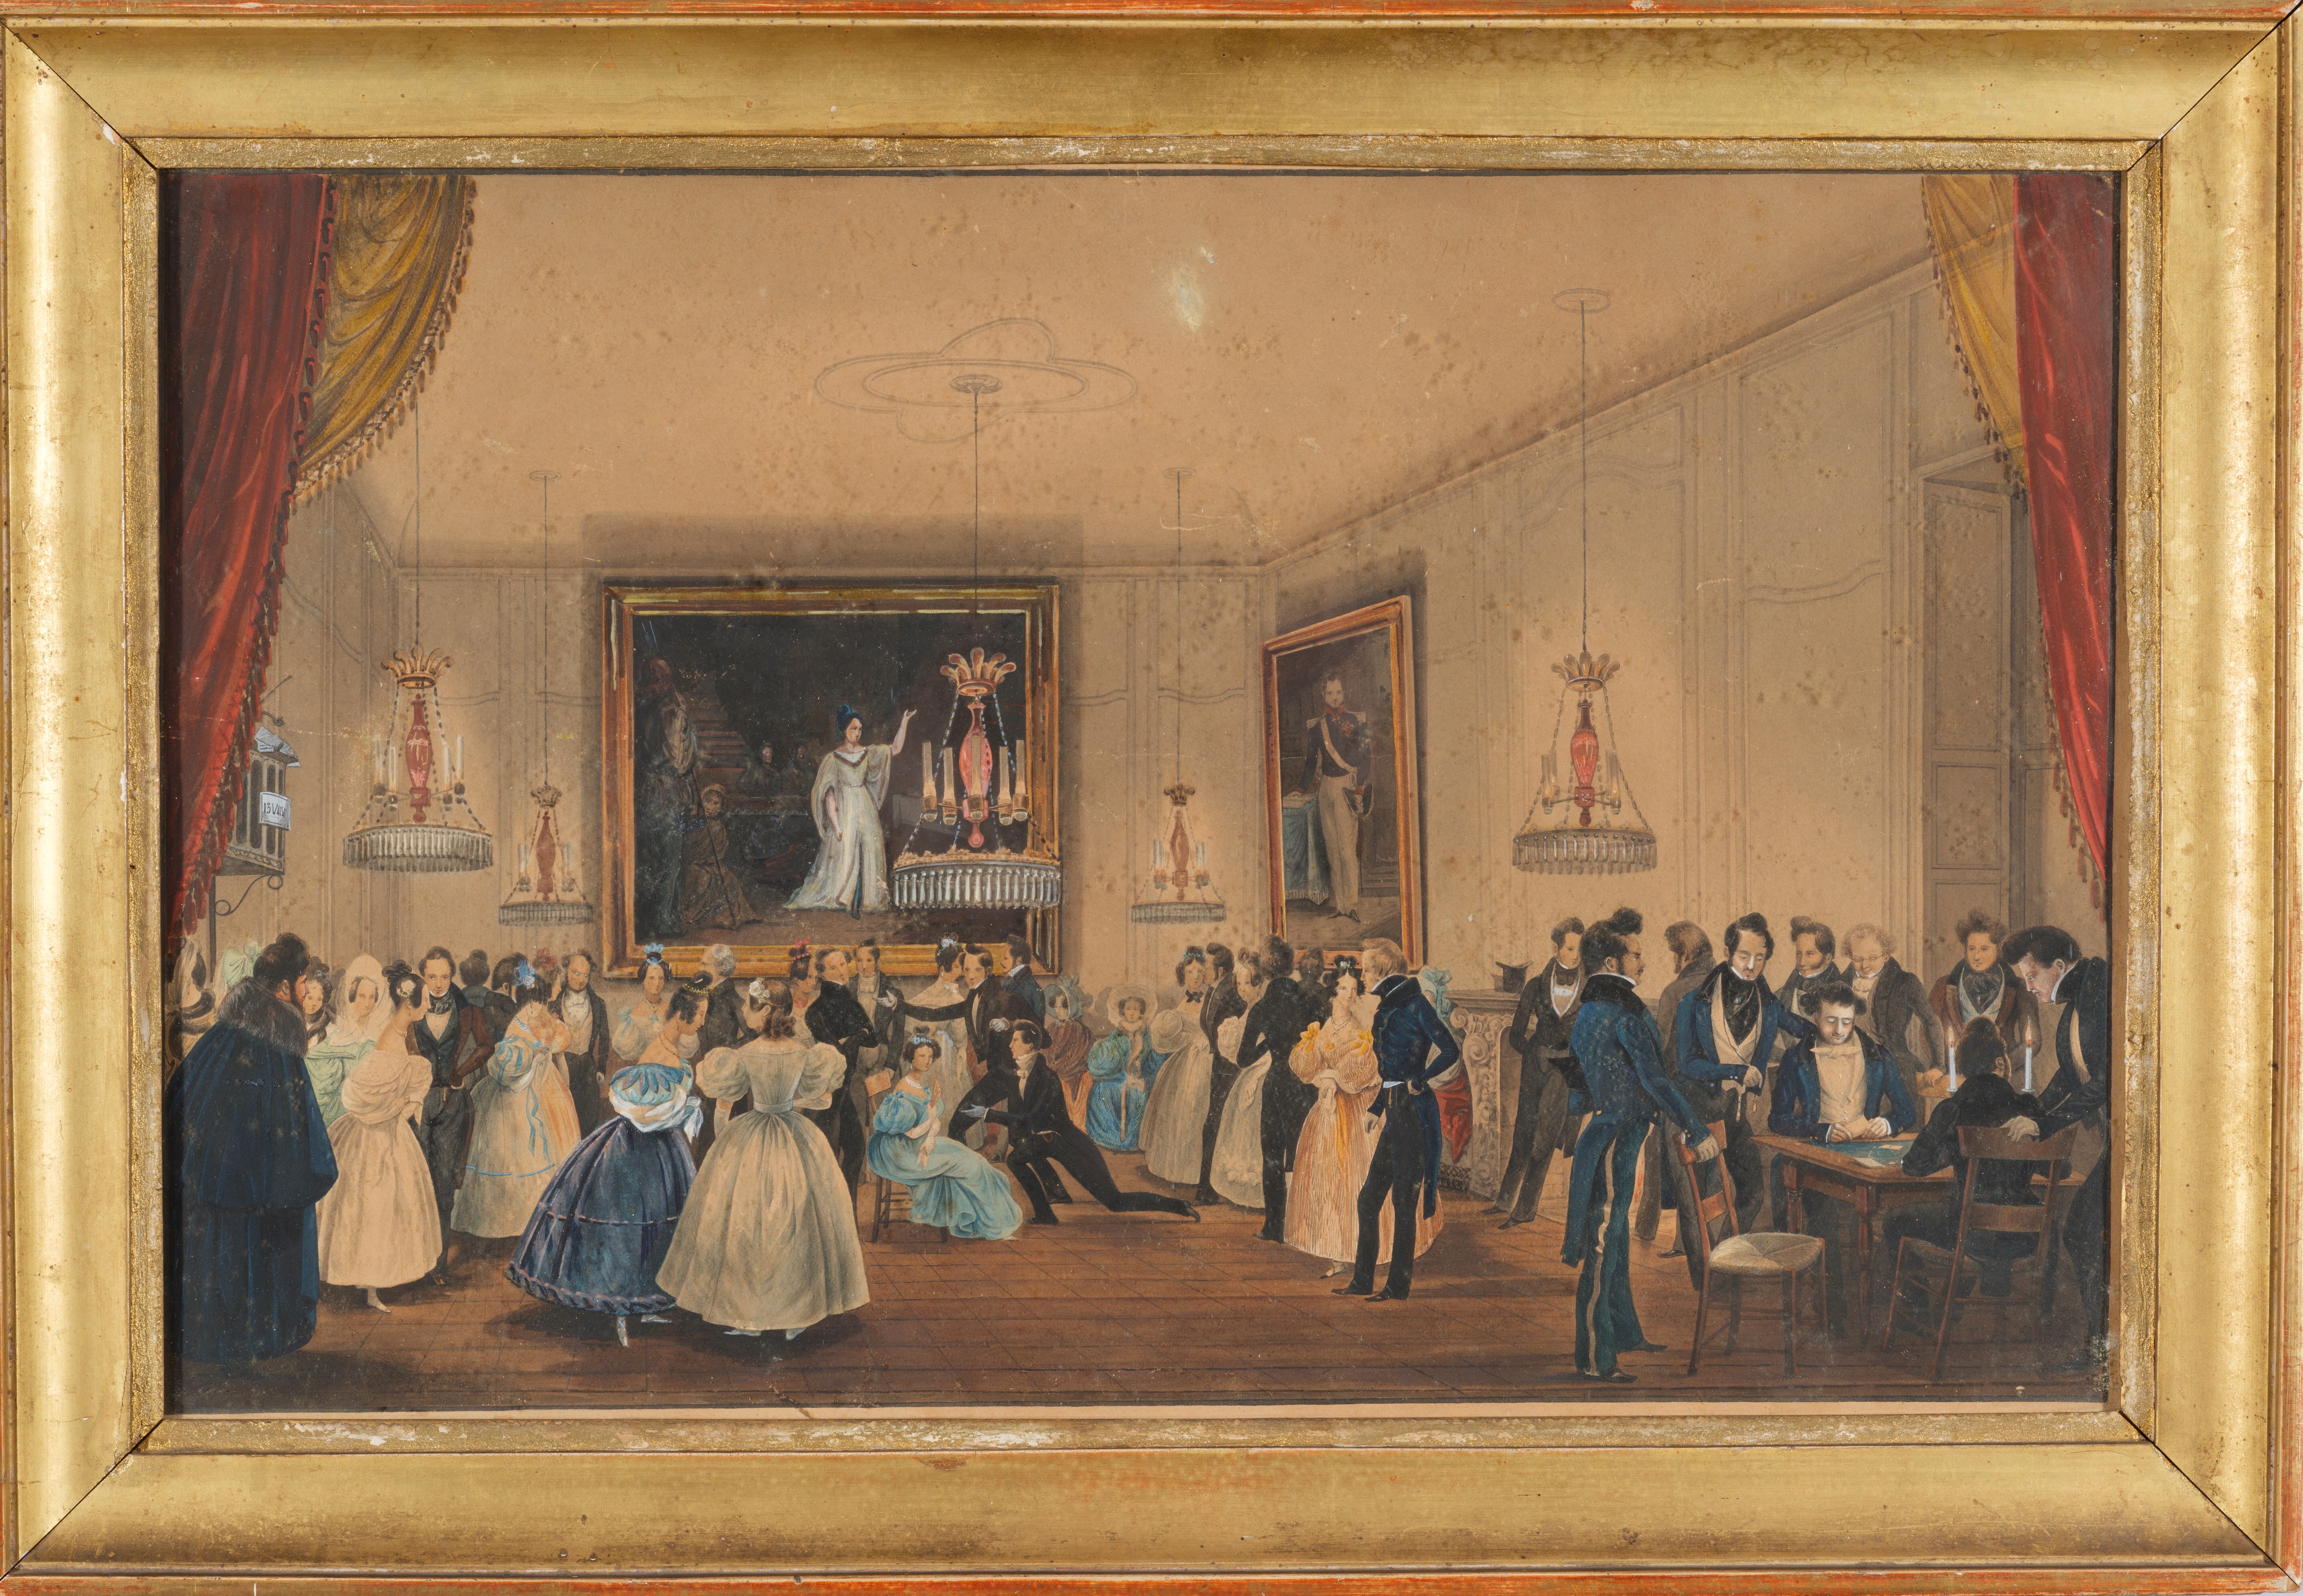 Contenu du E. Ravignat, Un bal dans un salon de l'hôtel-de-Ville sous la Restauration, entre 1834 et 1845, aquarelle, inv. 76.1.45, Musée Charles de Bruyères, Remiremont